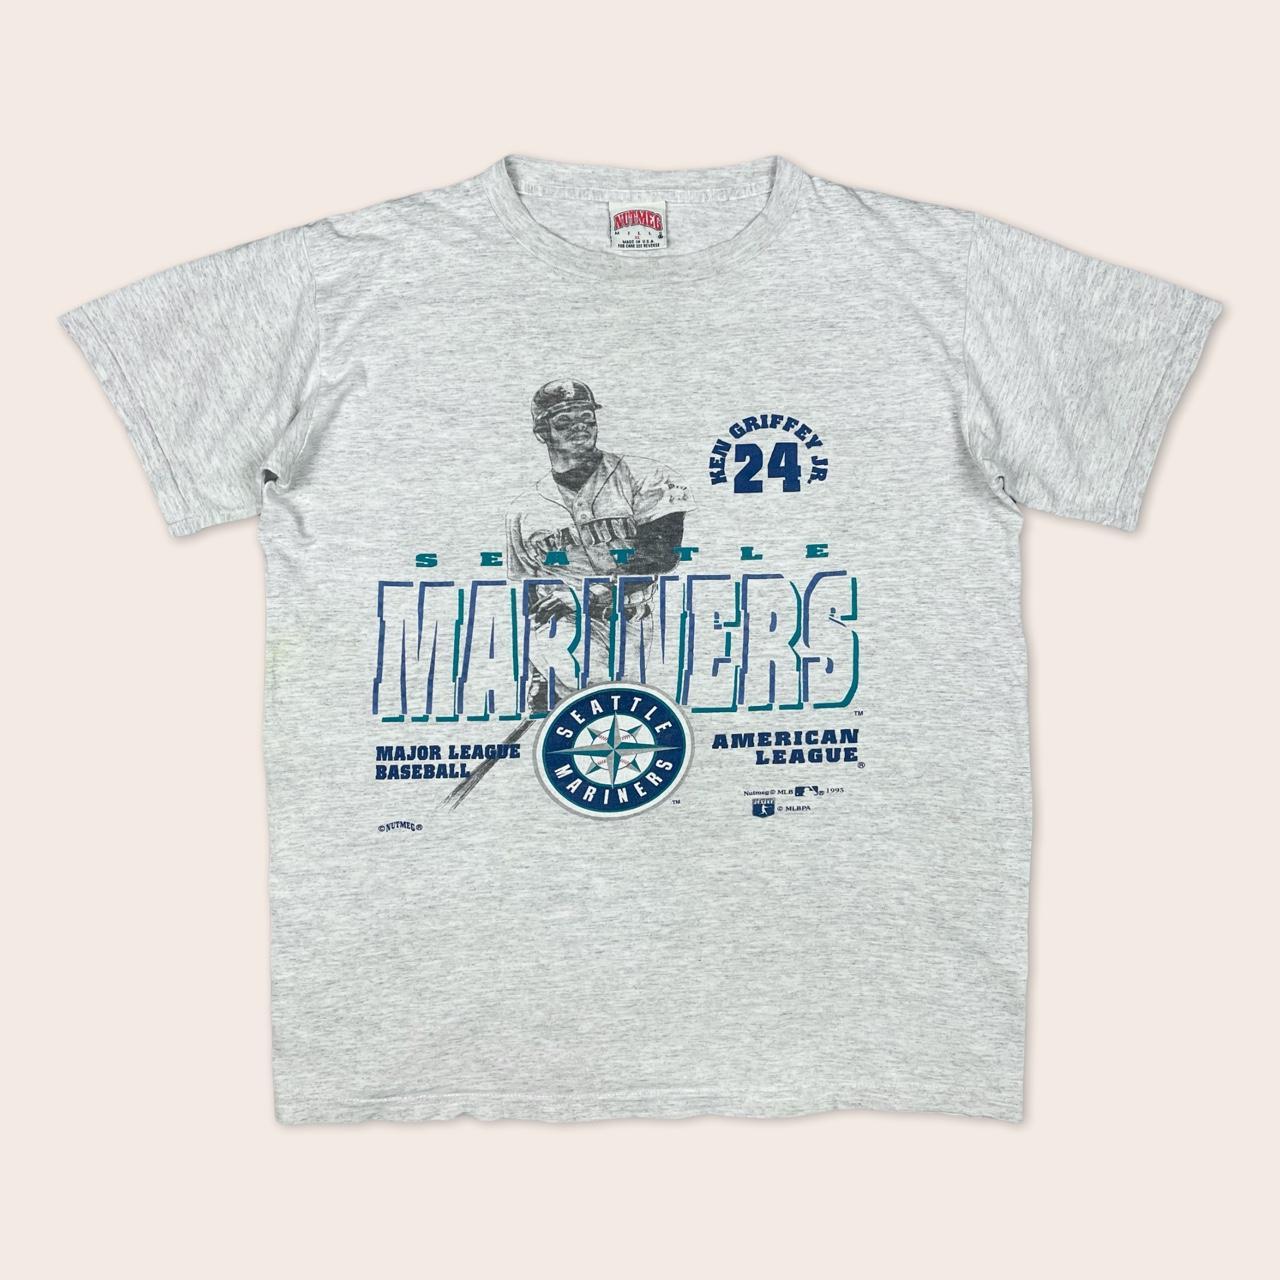 Ken Griffey Jr Swing Seattle Mariners Baseball Sportwear T-Shirt